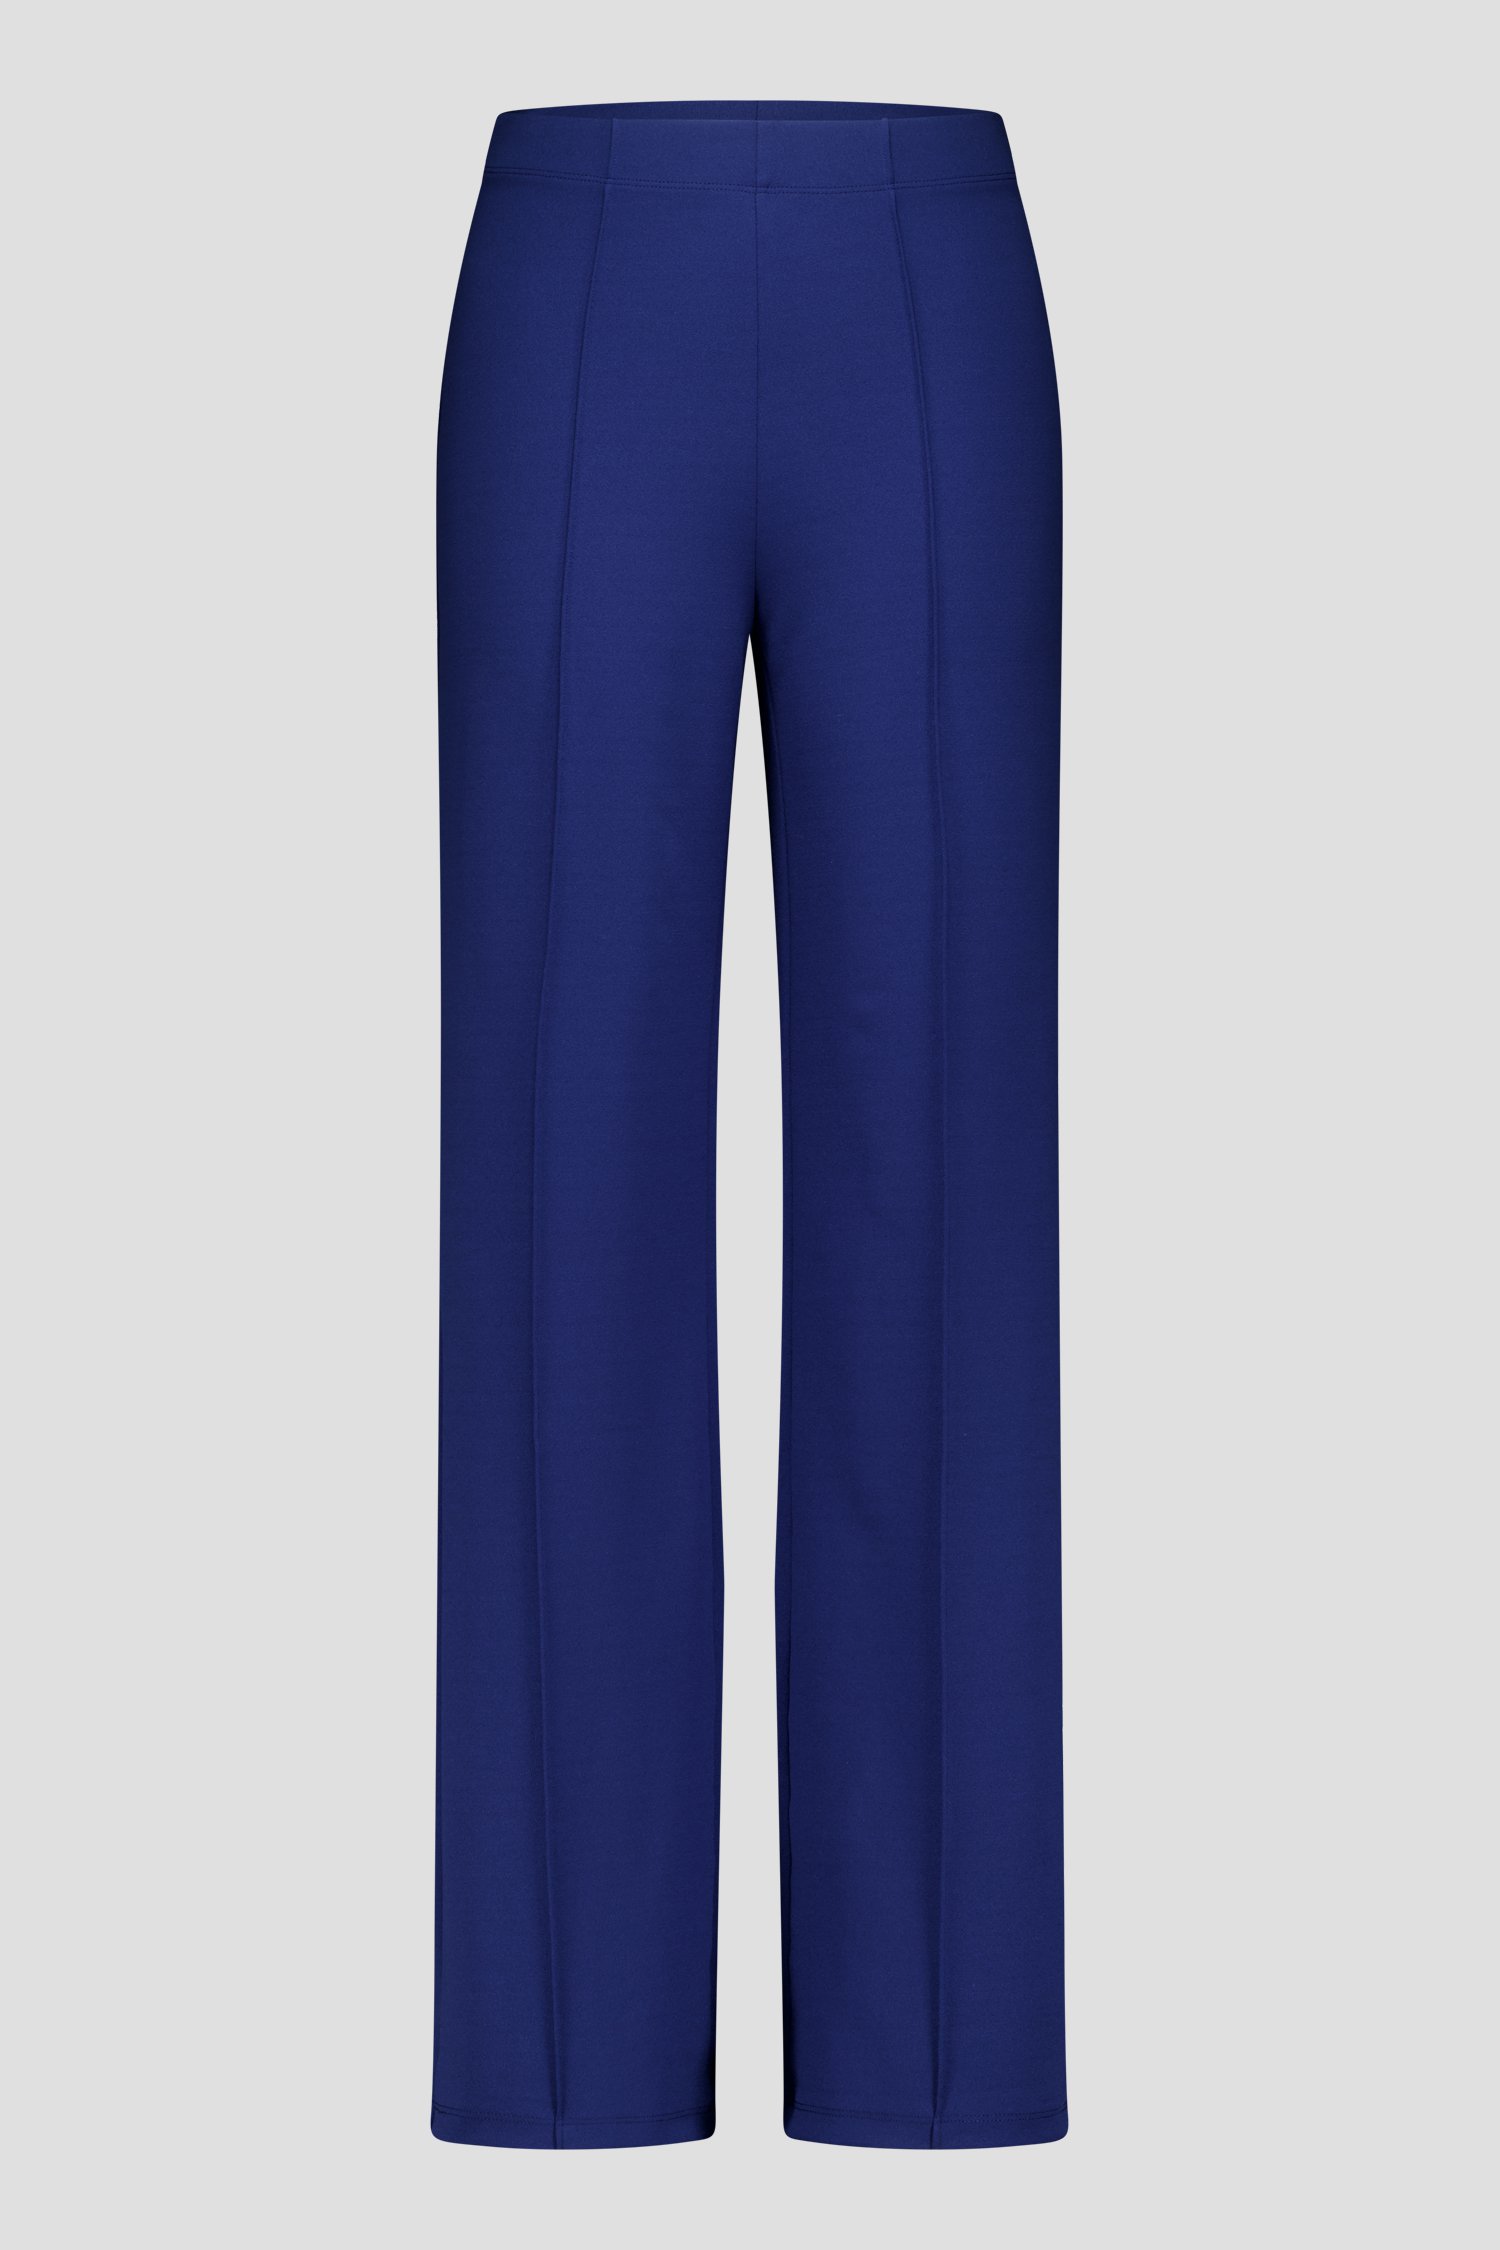 Donkerblauwe broek met stretch  van Liberty Island voor Dames